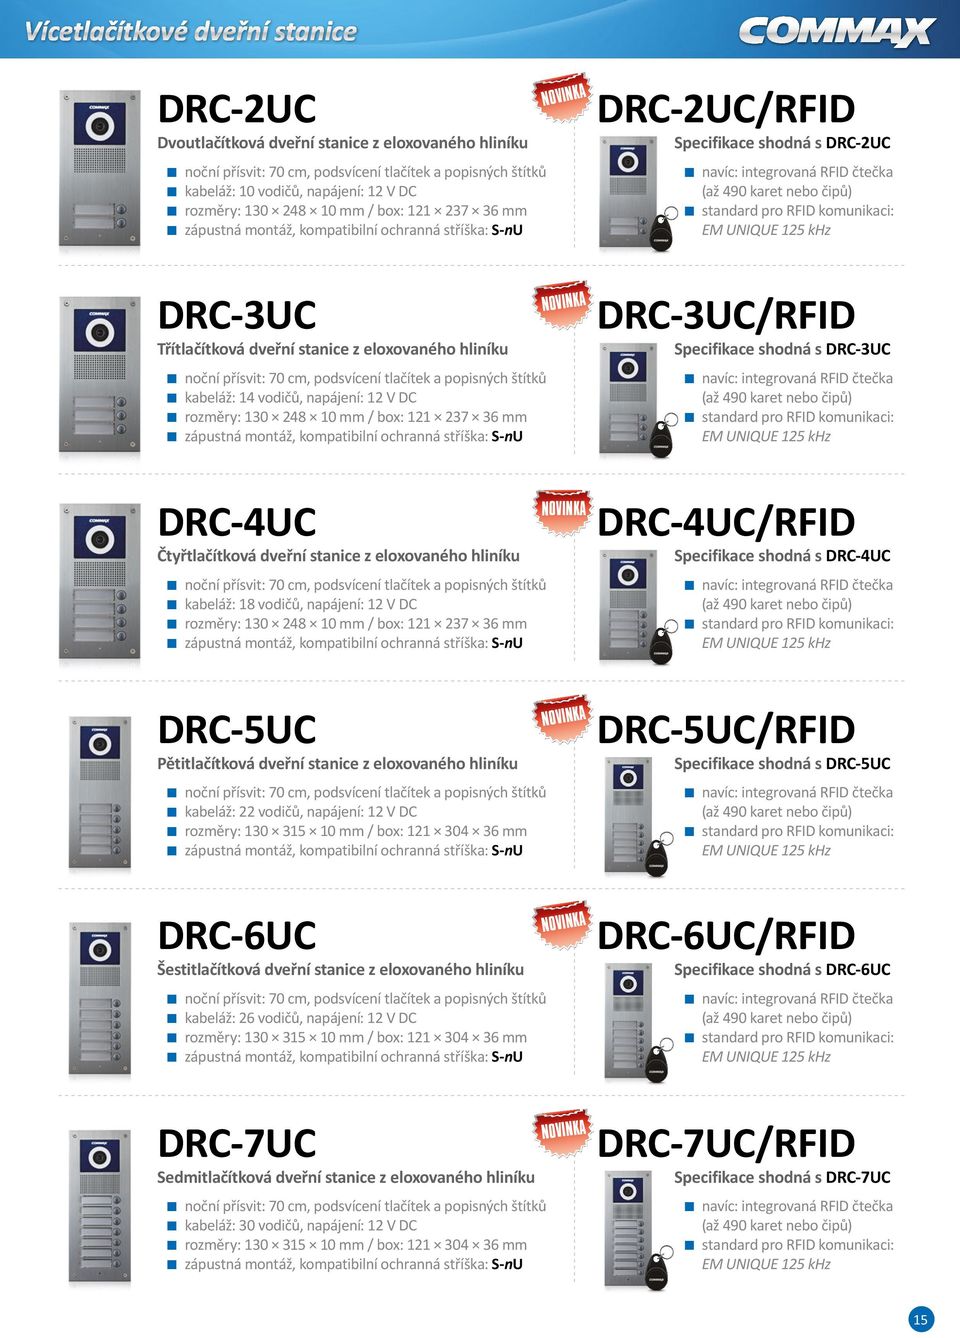 RFID komunikaci: EM UNIQUE 15 khz DRC-3UC Třítlačítková dveřní stanice z eloxovaného hliníku noční přísvit: 70 cm, podsvícení tlačítek a popisných štítků kabeláž: 1 vodičů, napájení: 1 V DC rozměry: